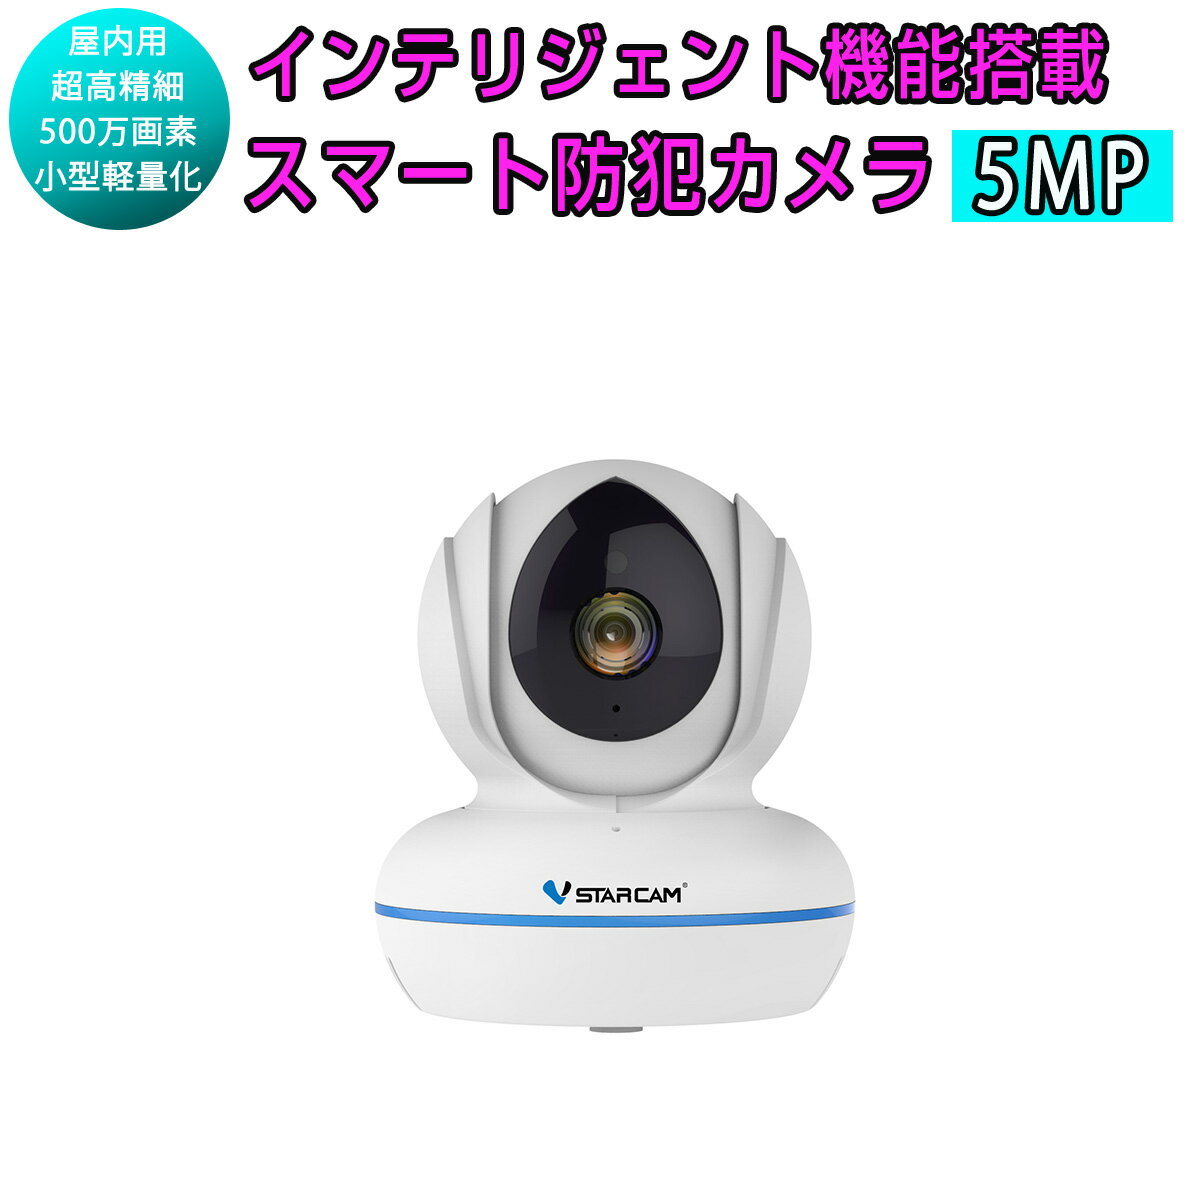 小型 防犯カメラ ワイヤレス C22Q VStarcam 5